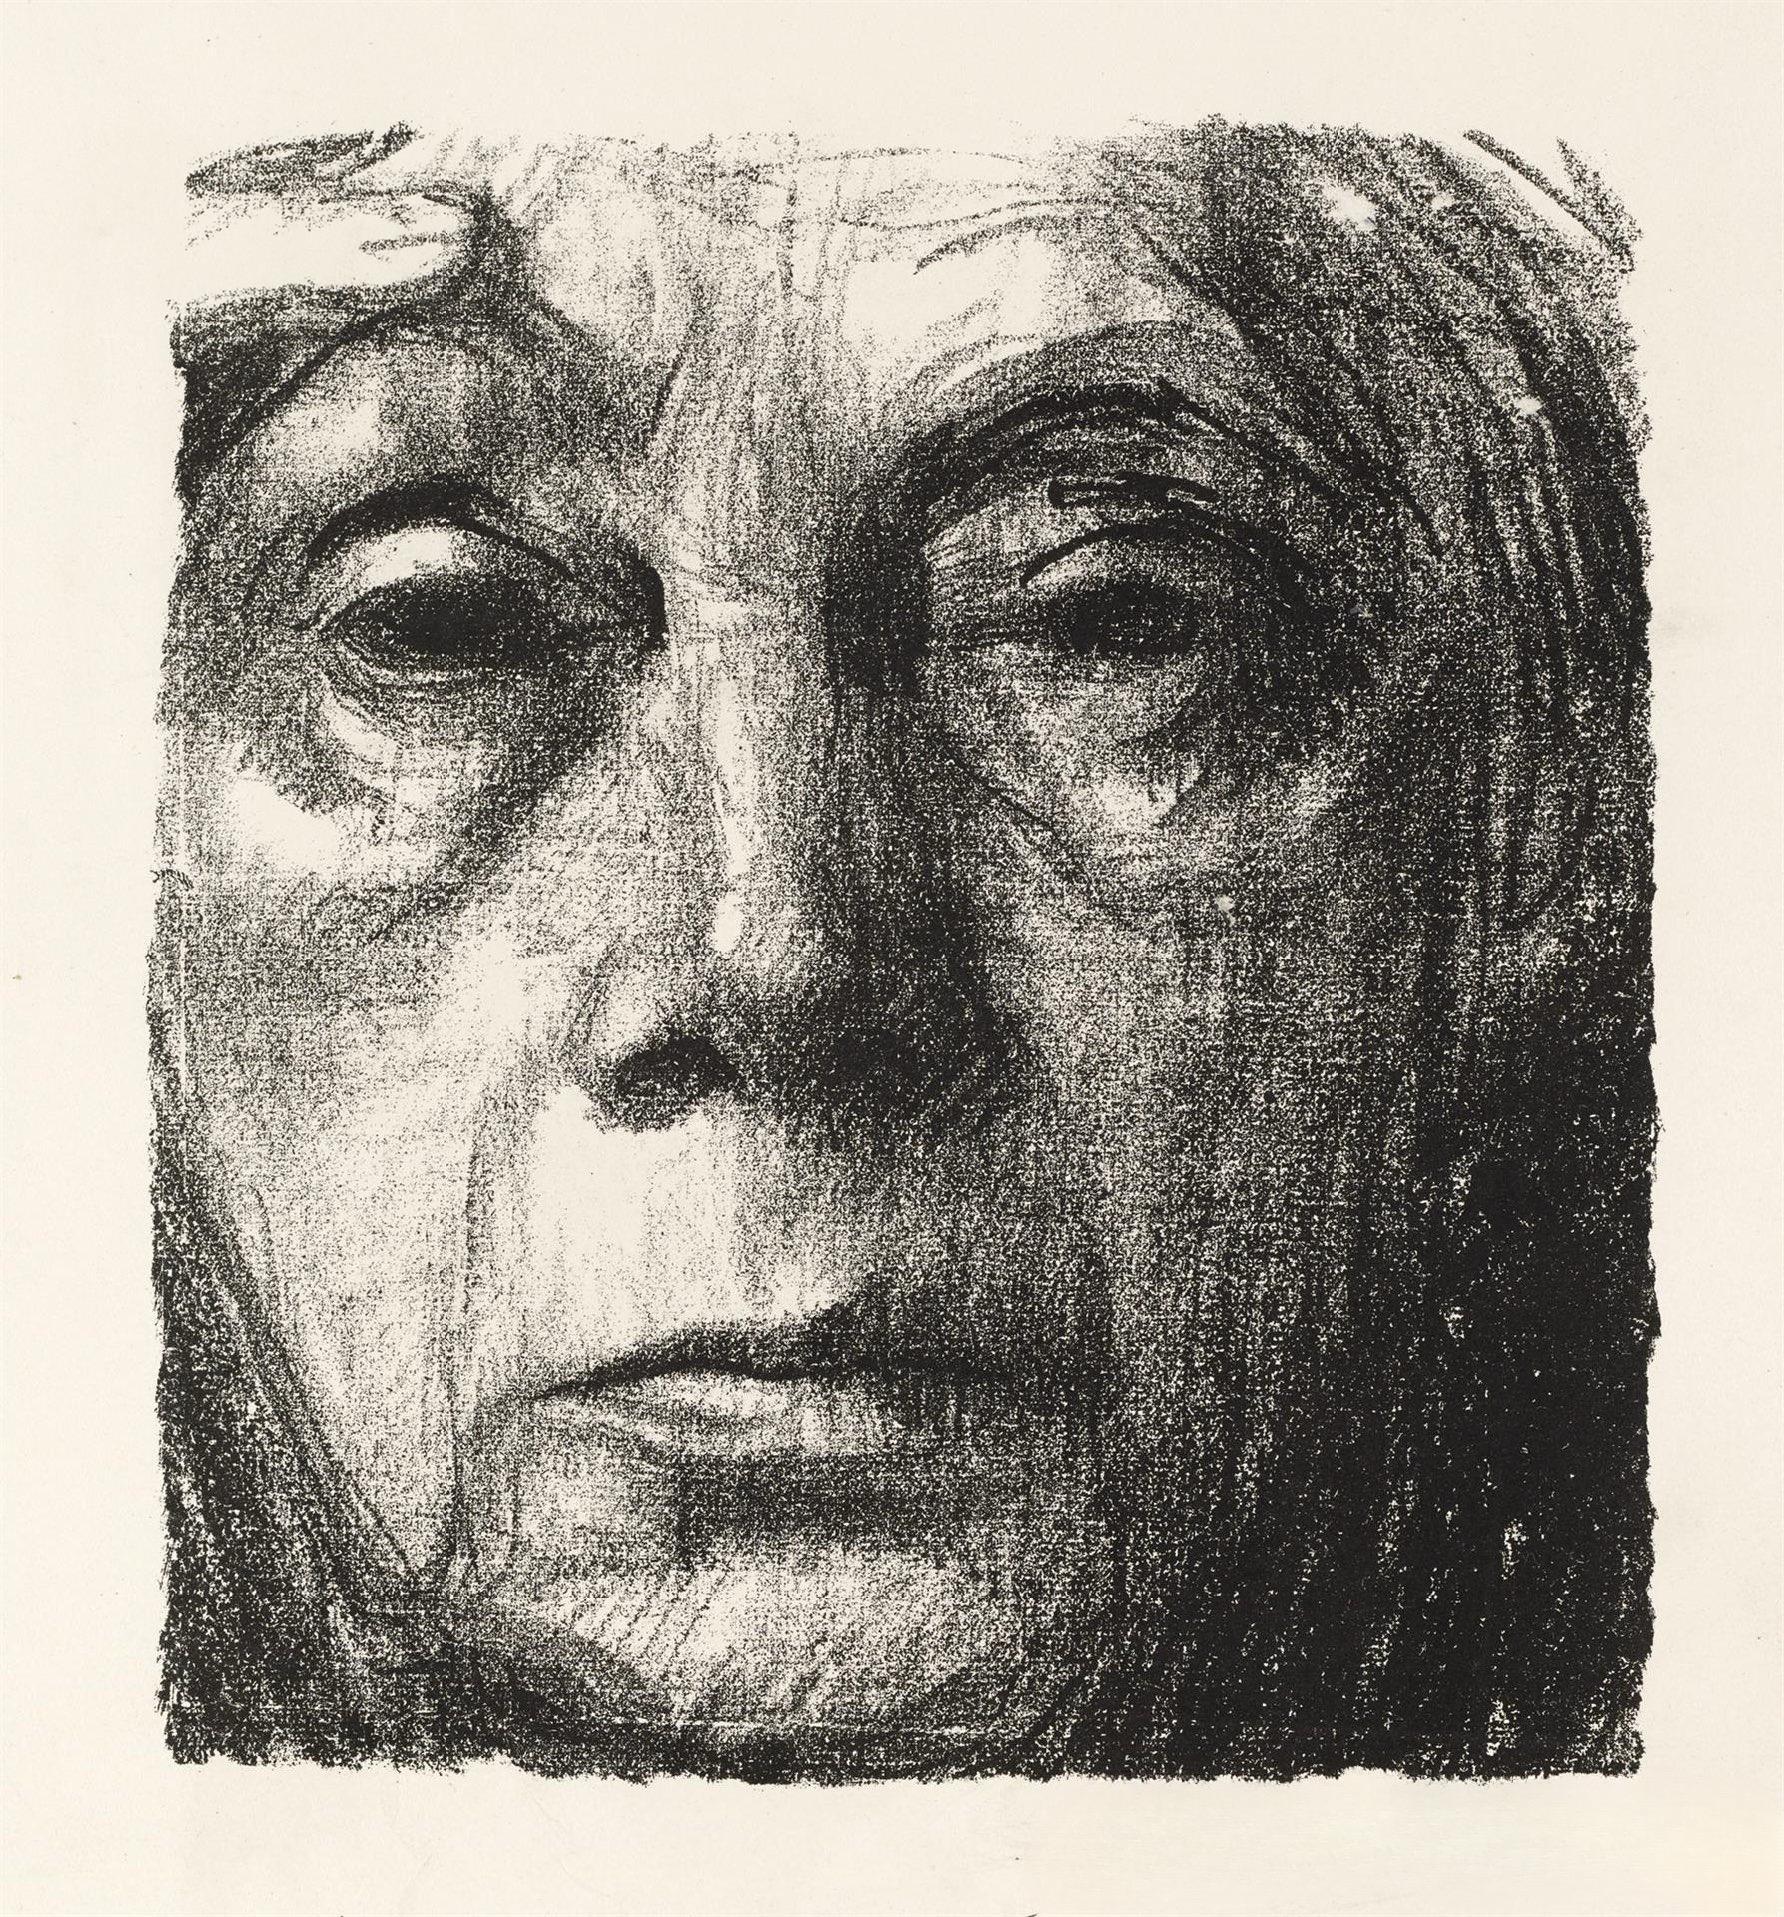 Kollwitz, Self-Portrait (after) - Print by Käthe Kollwitz